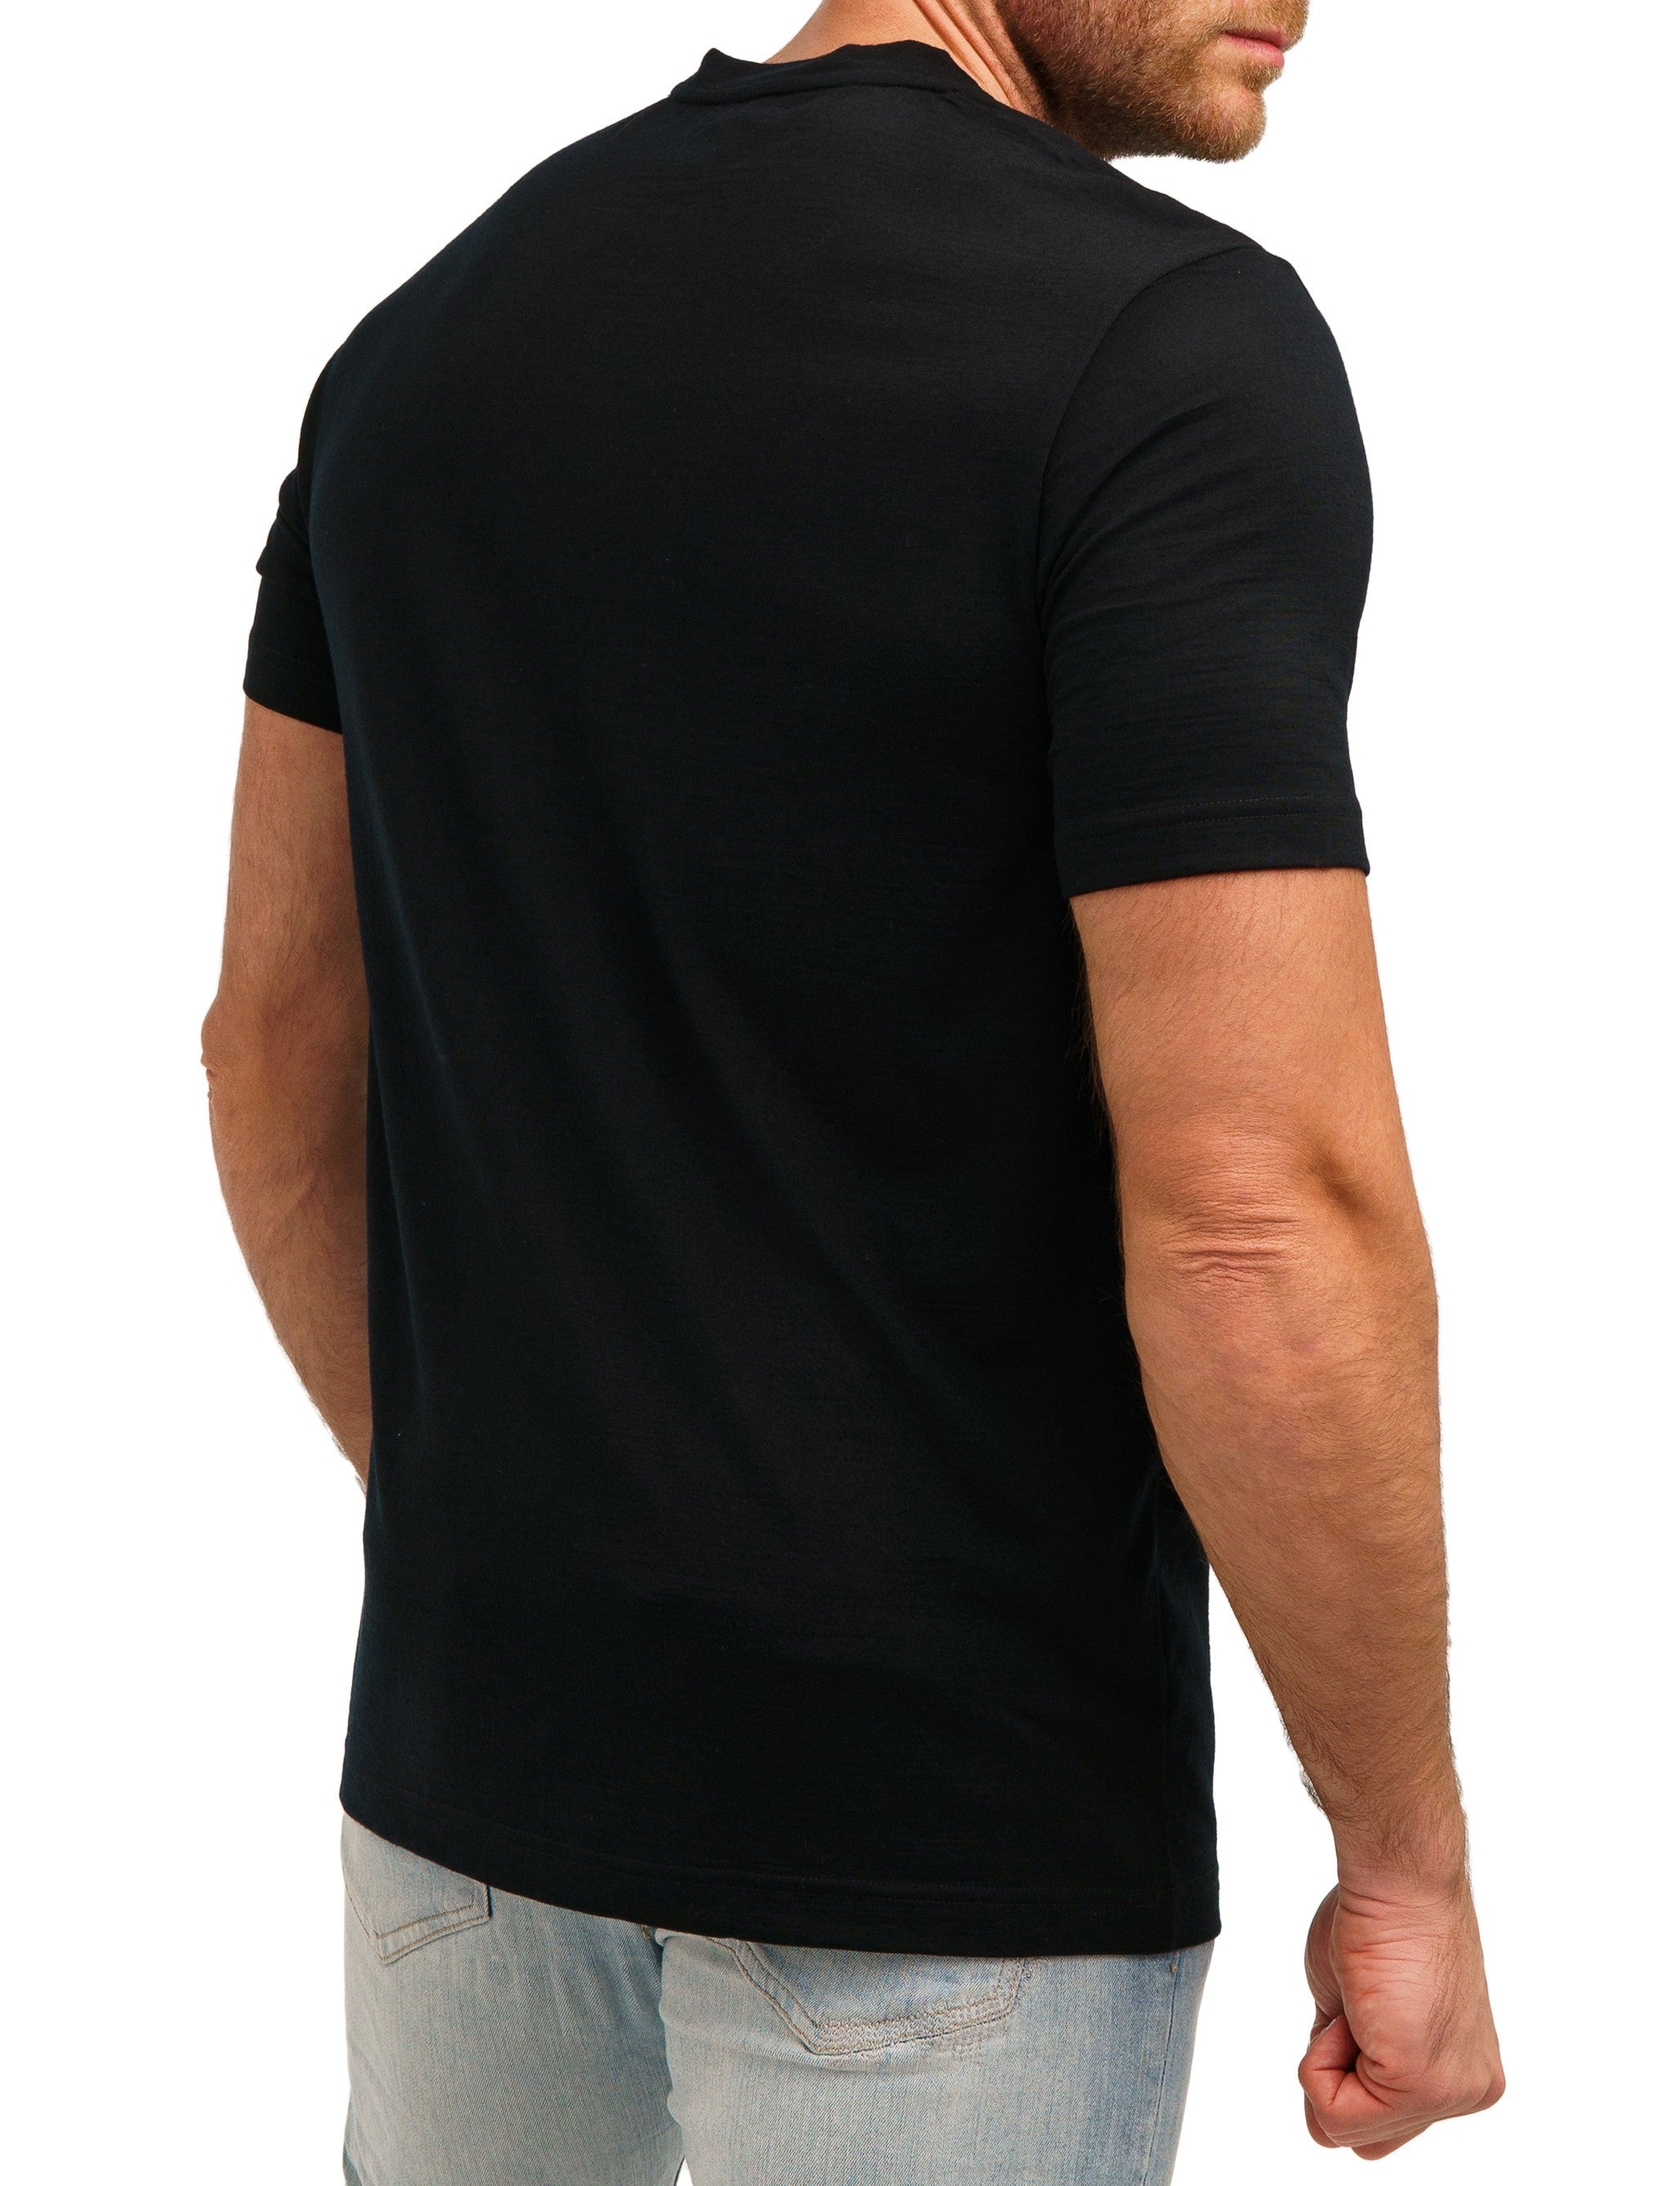 Merino Wool T-shirt Black Oil – Merino Tech